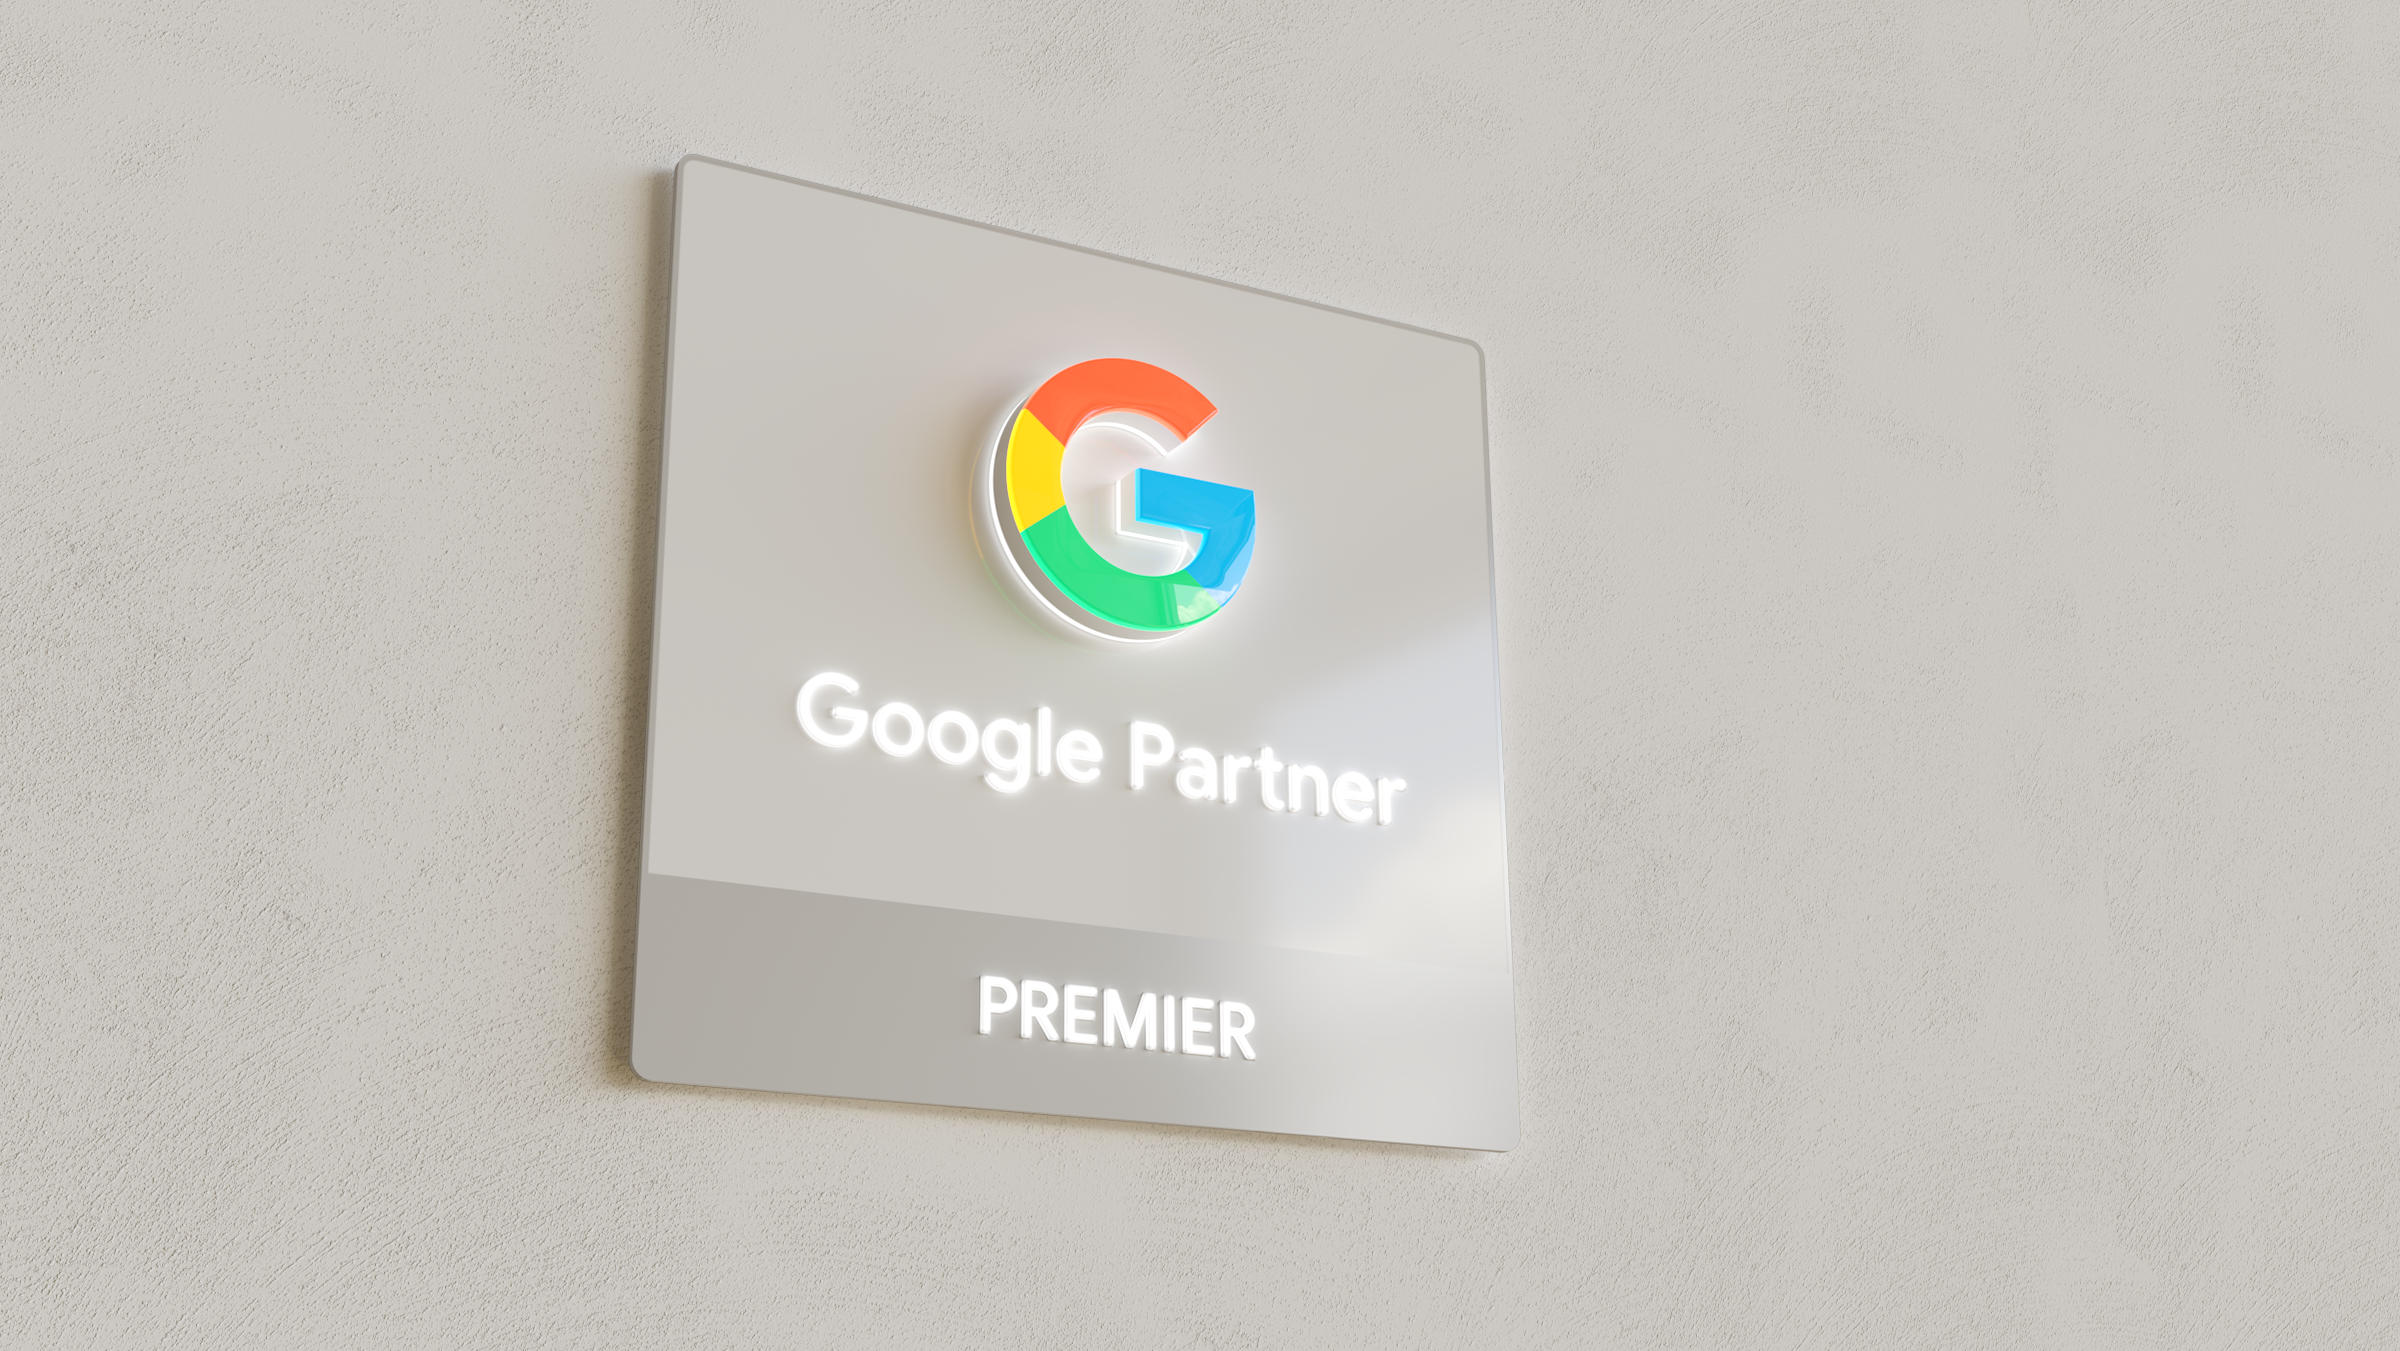 Google Premier Partner LEDSign on Wall